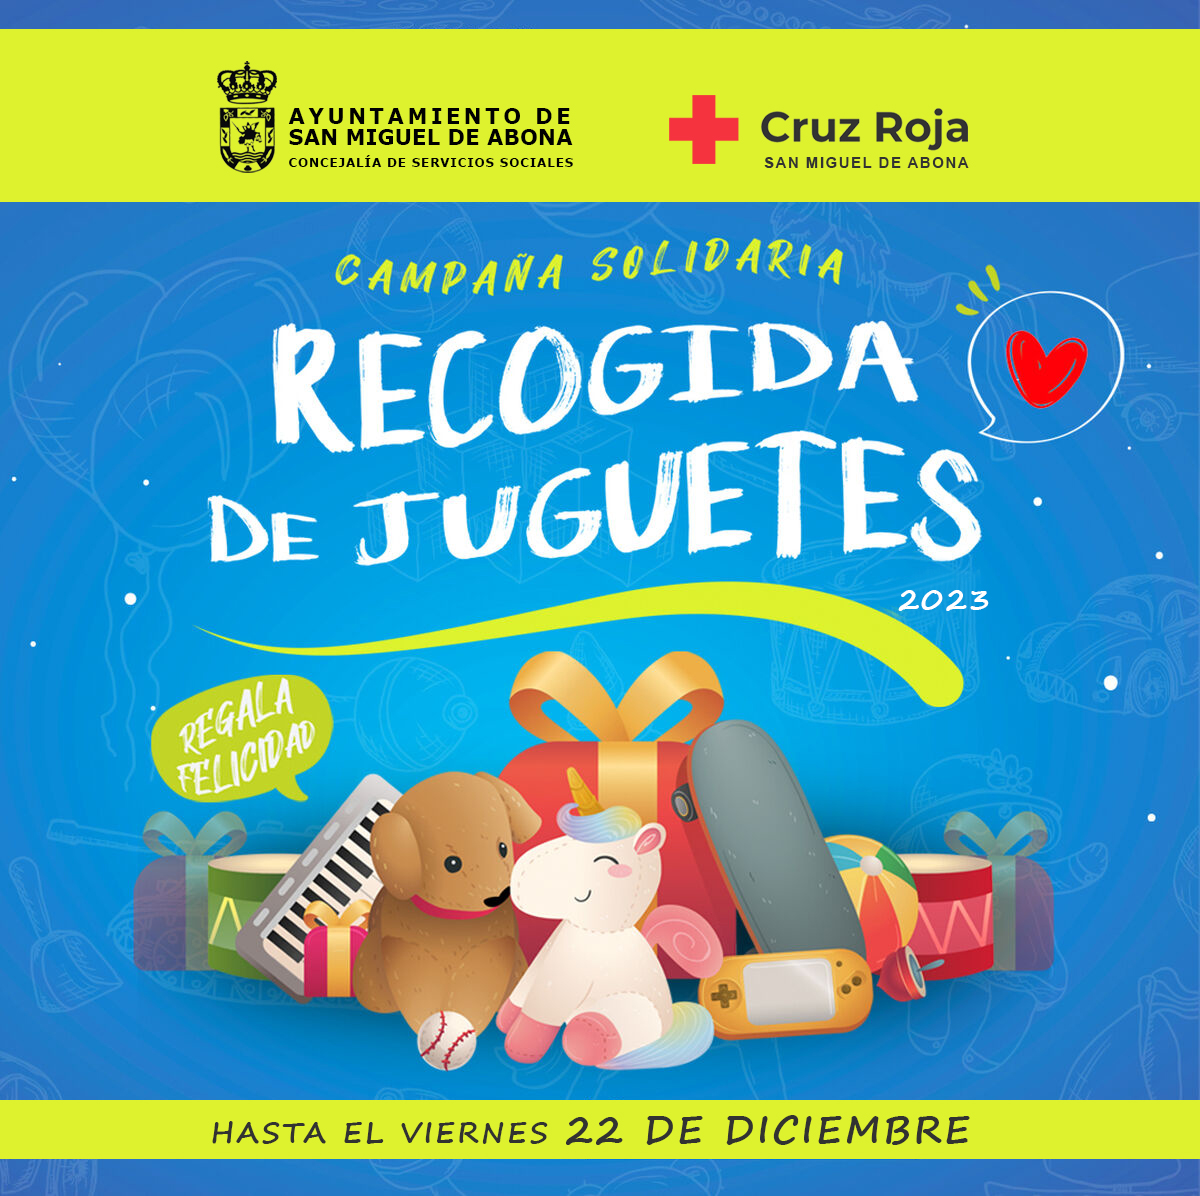 Comienza la Campaña Solidaria de recogida de juguetes «Regala felicidad»